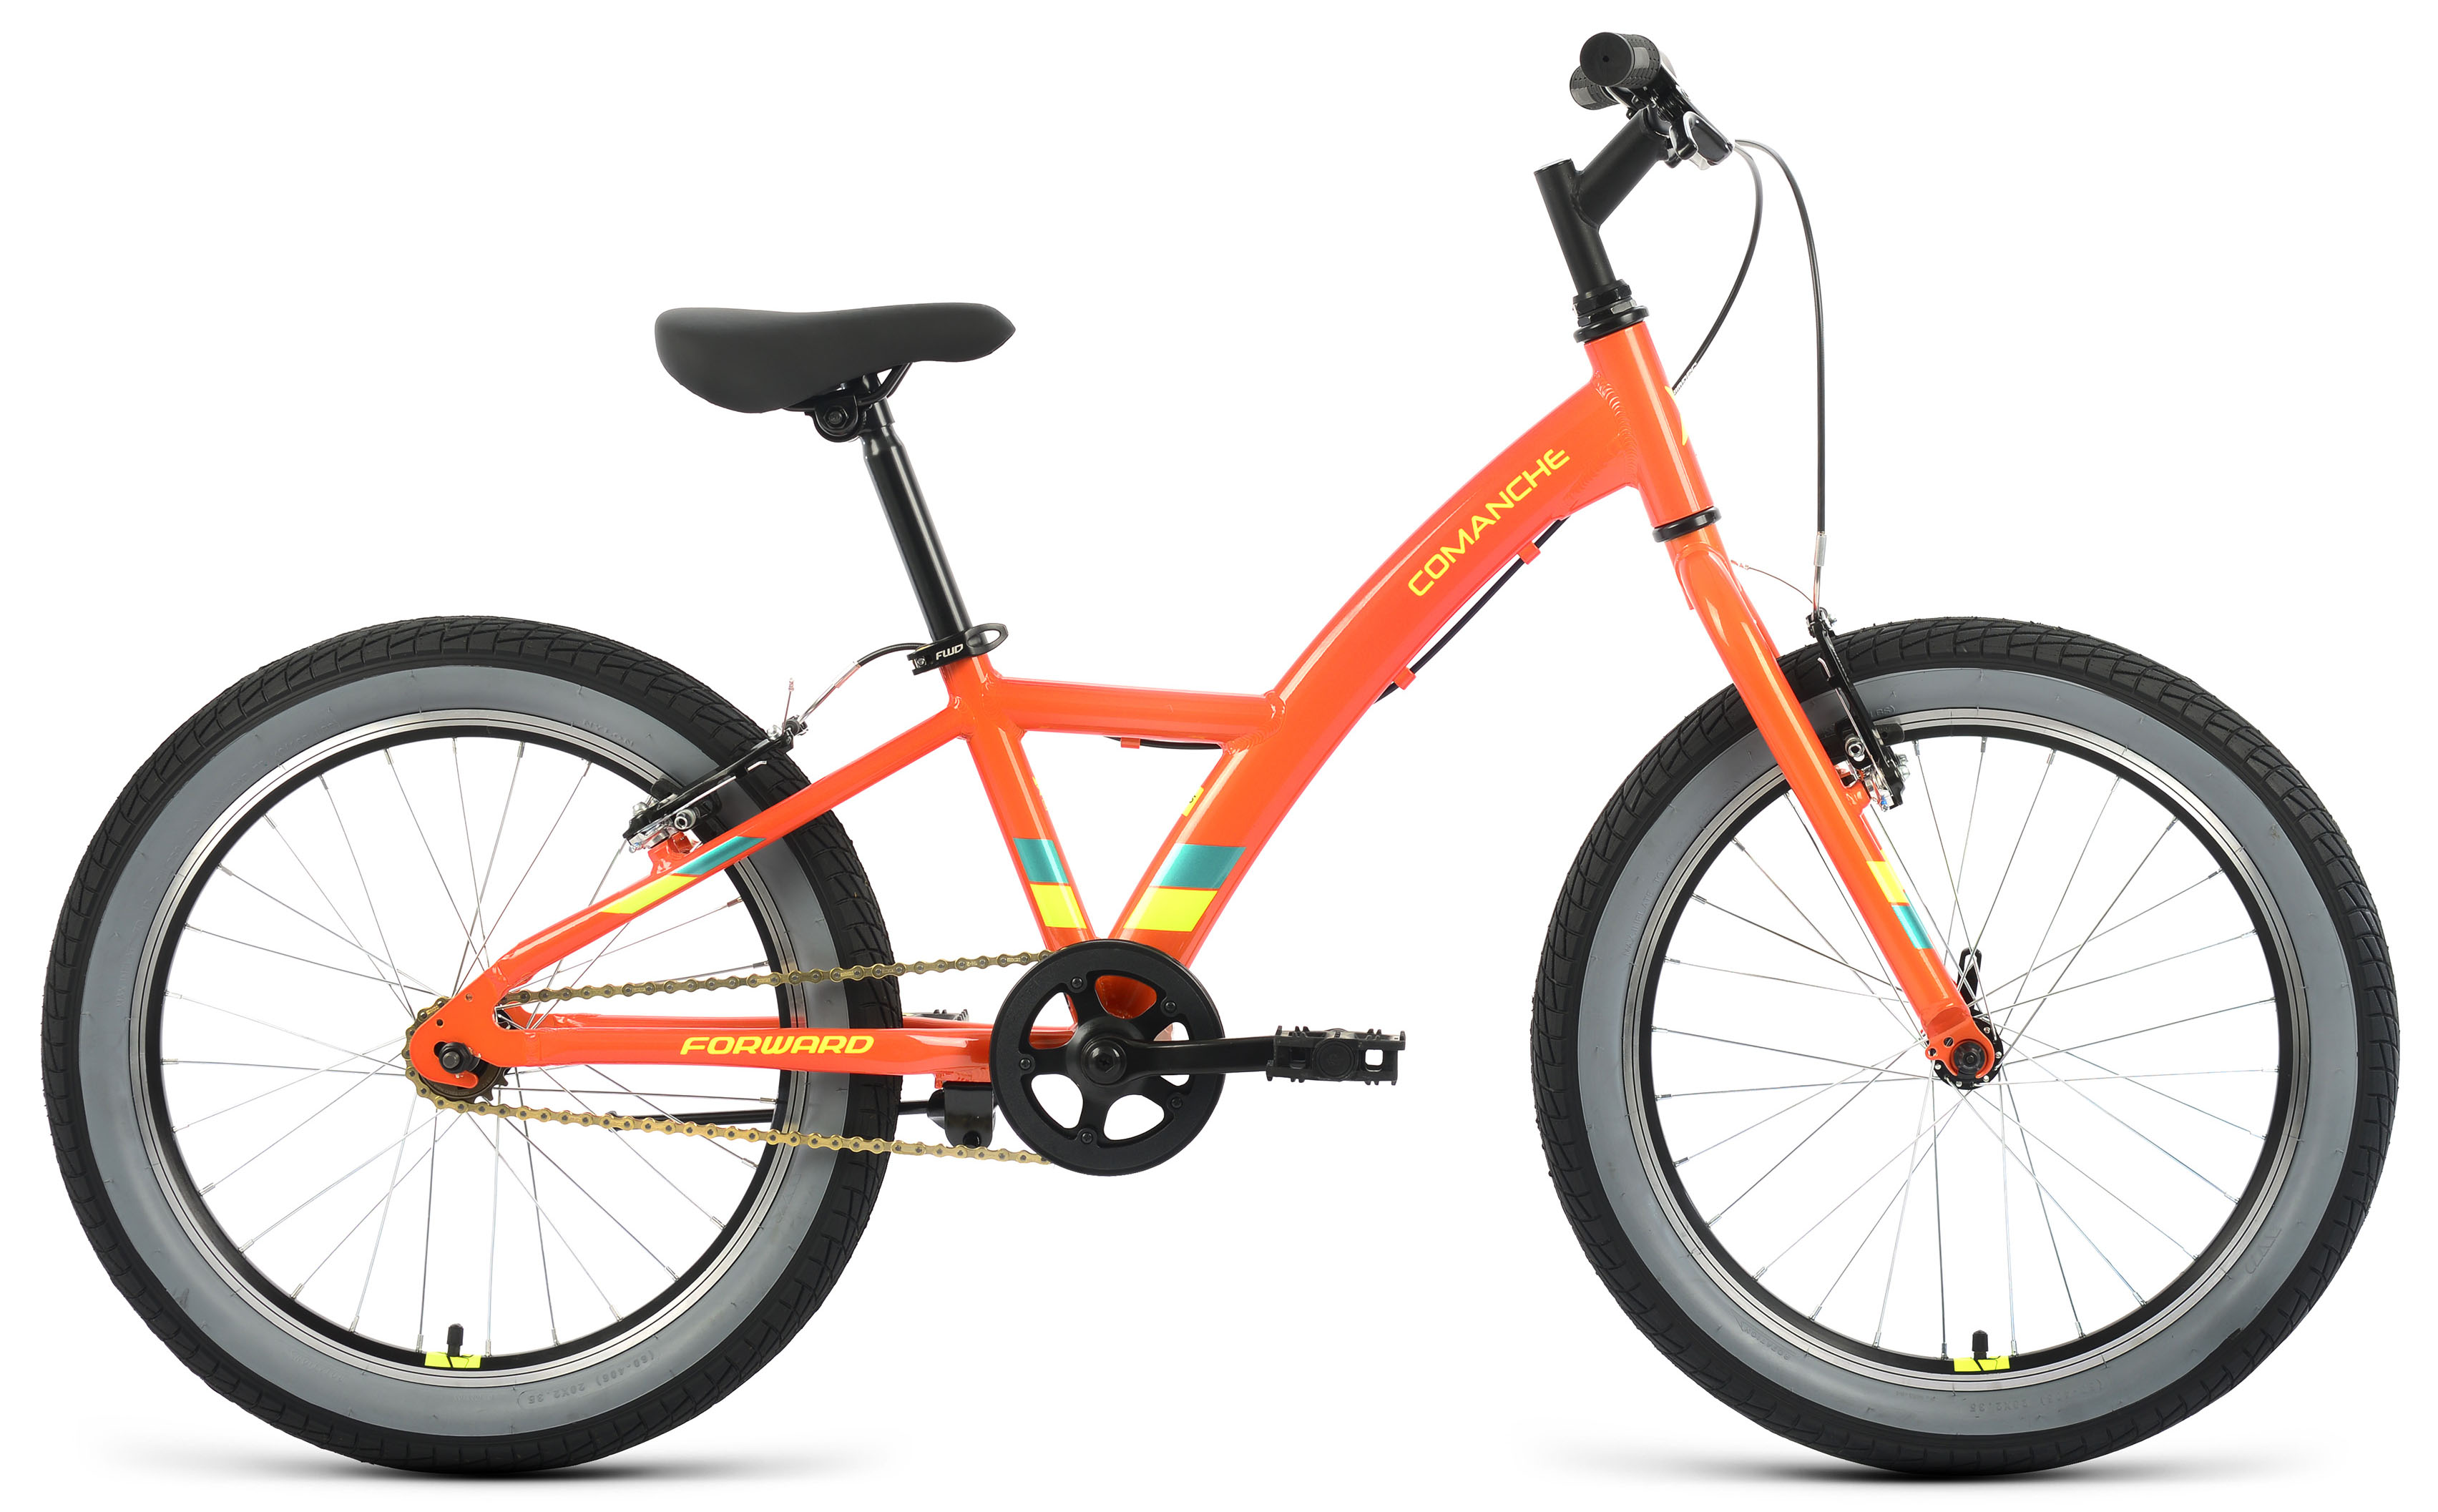  Отзывы о Детском велосипеде Forward Comanche 20 1.0 2020